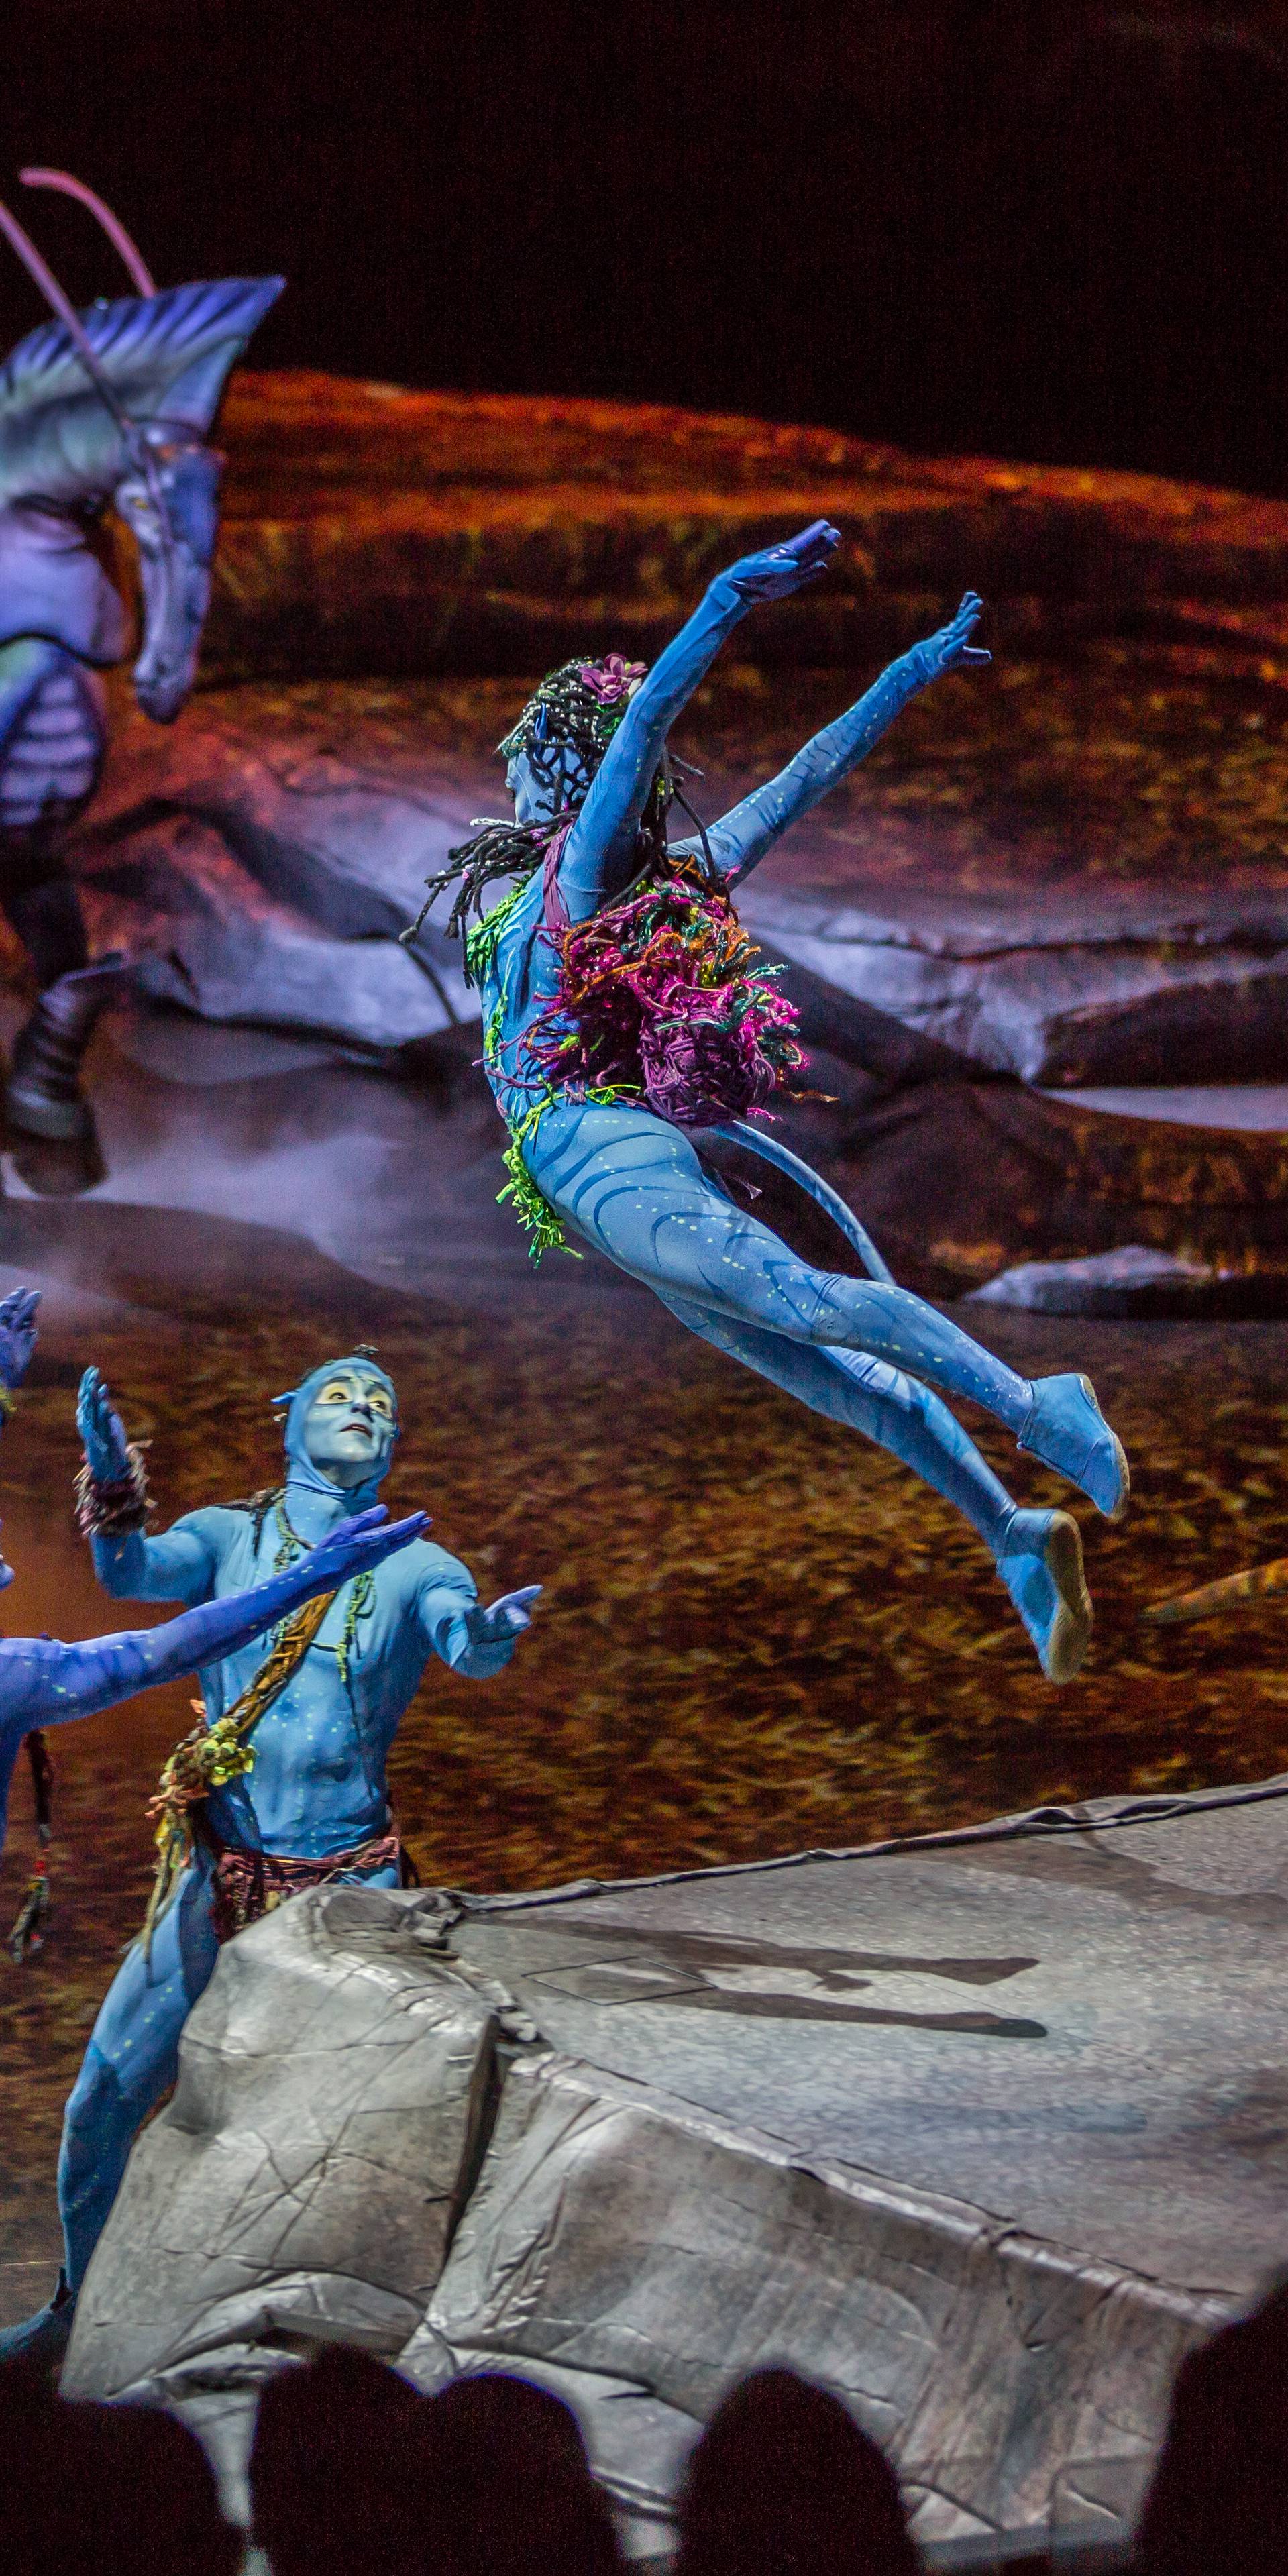 Cirque du Soleil u Zagrebu: Za opremu su im trebala 4 aviona